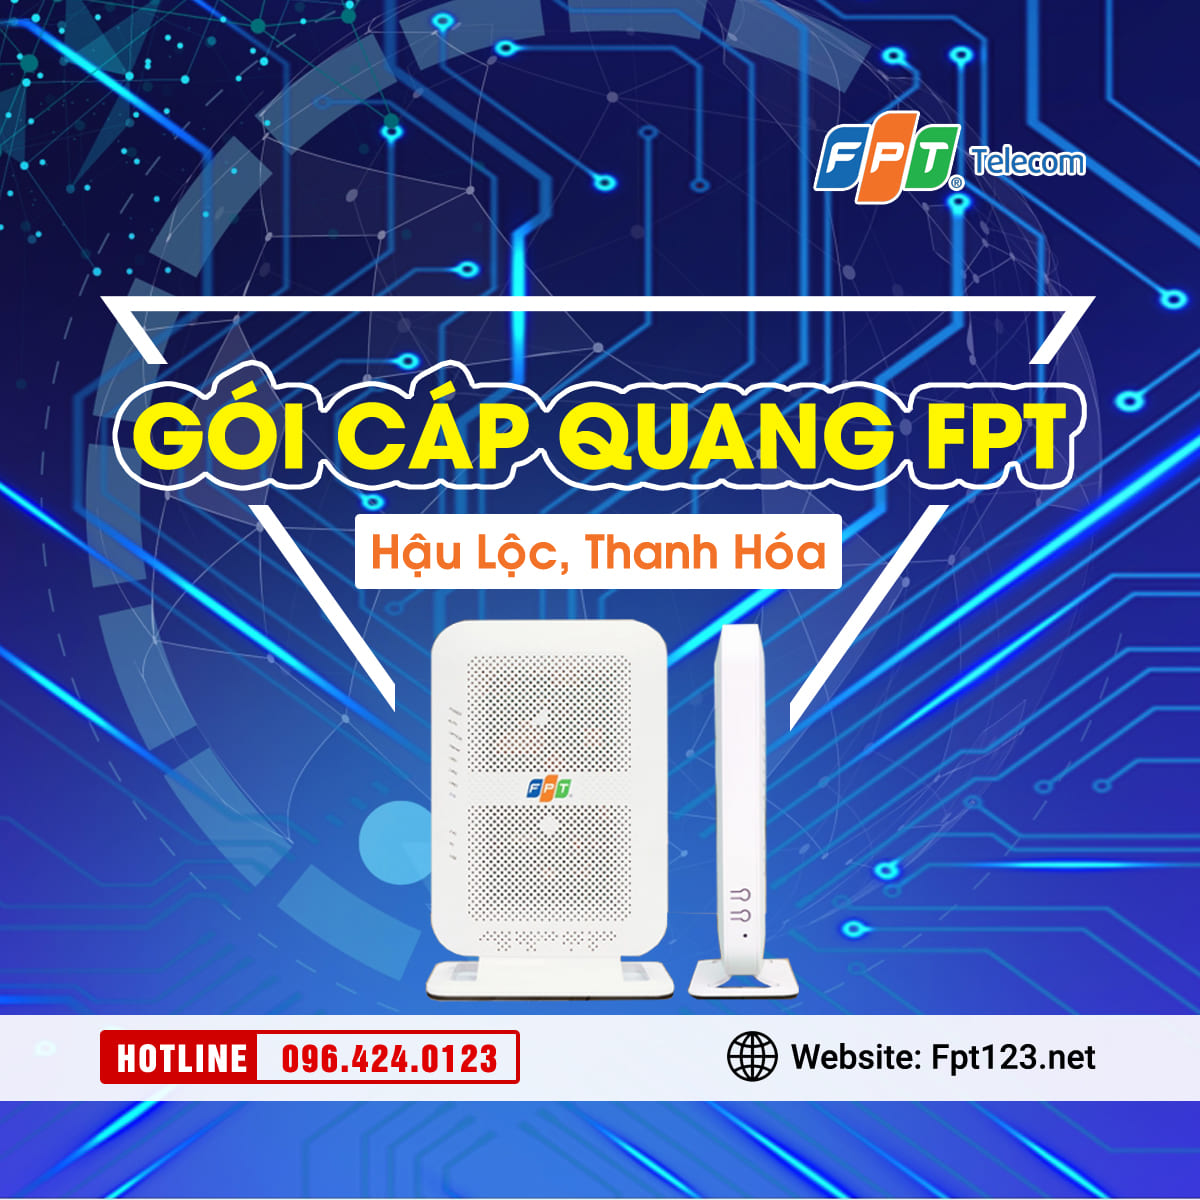 Gói cáp quang FPT Hậu Lộc, Thanh Hóa